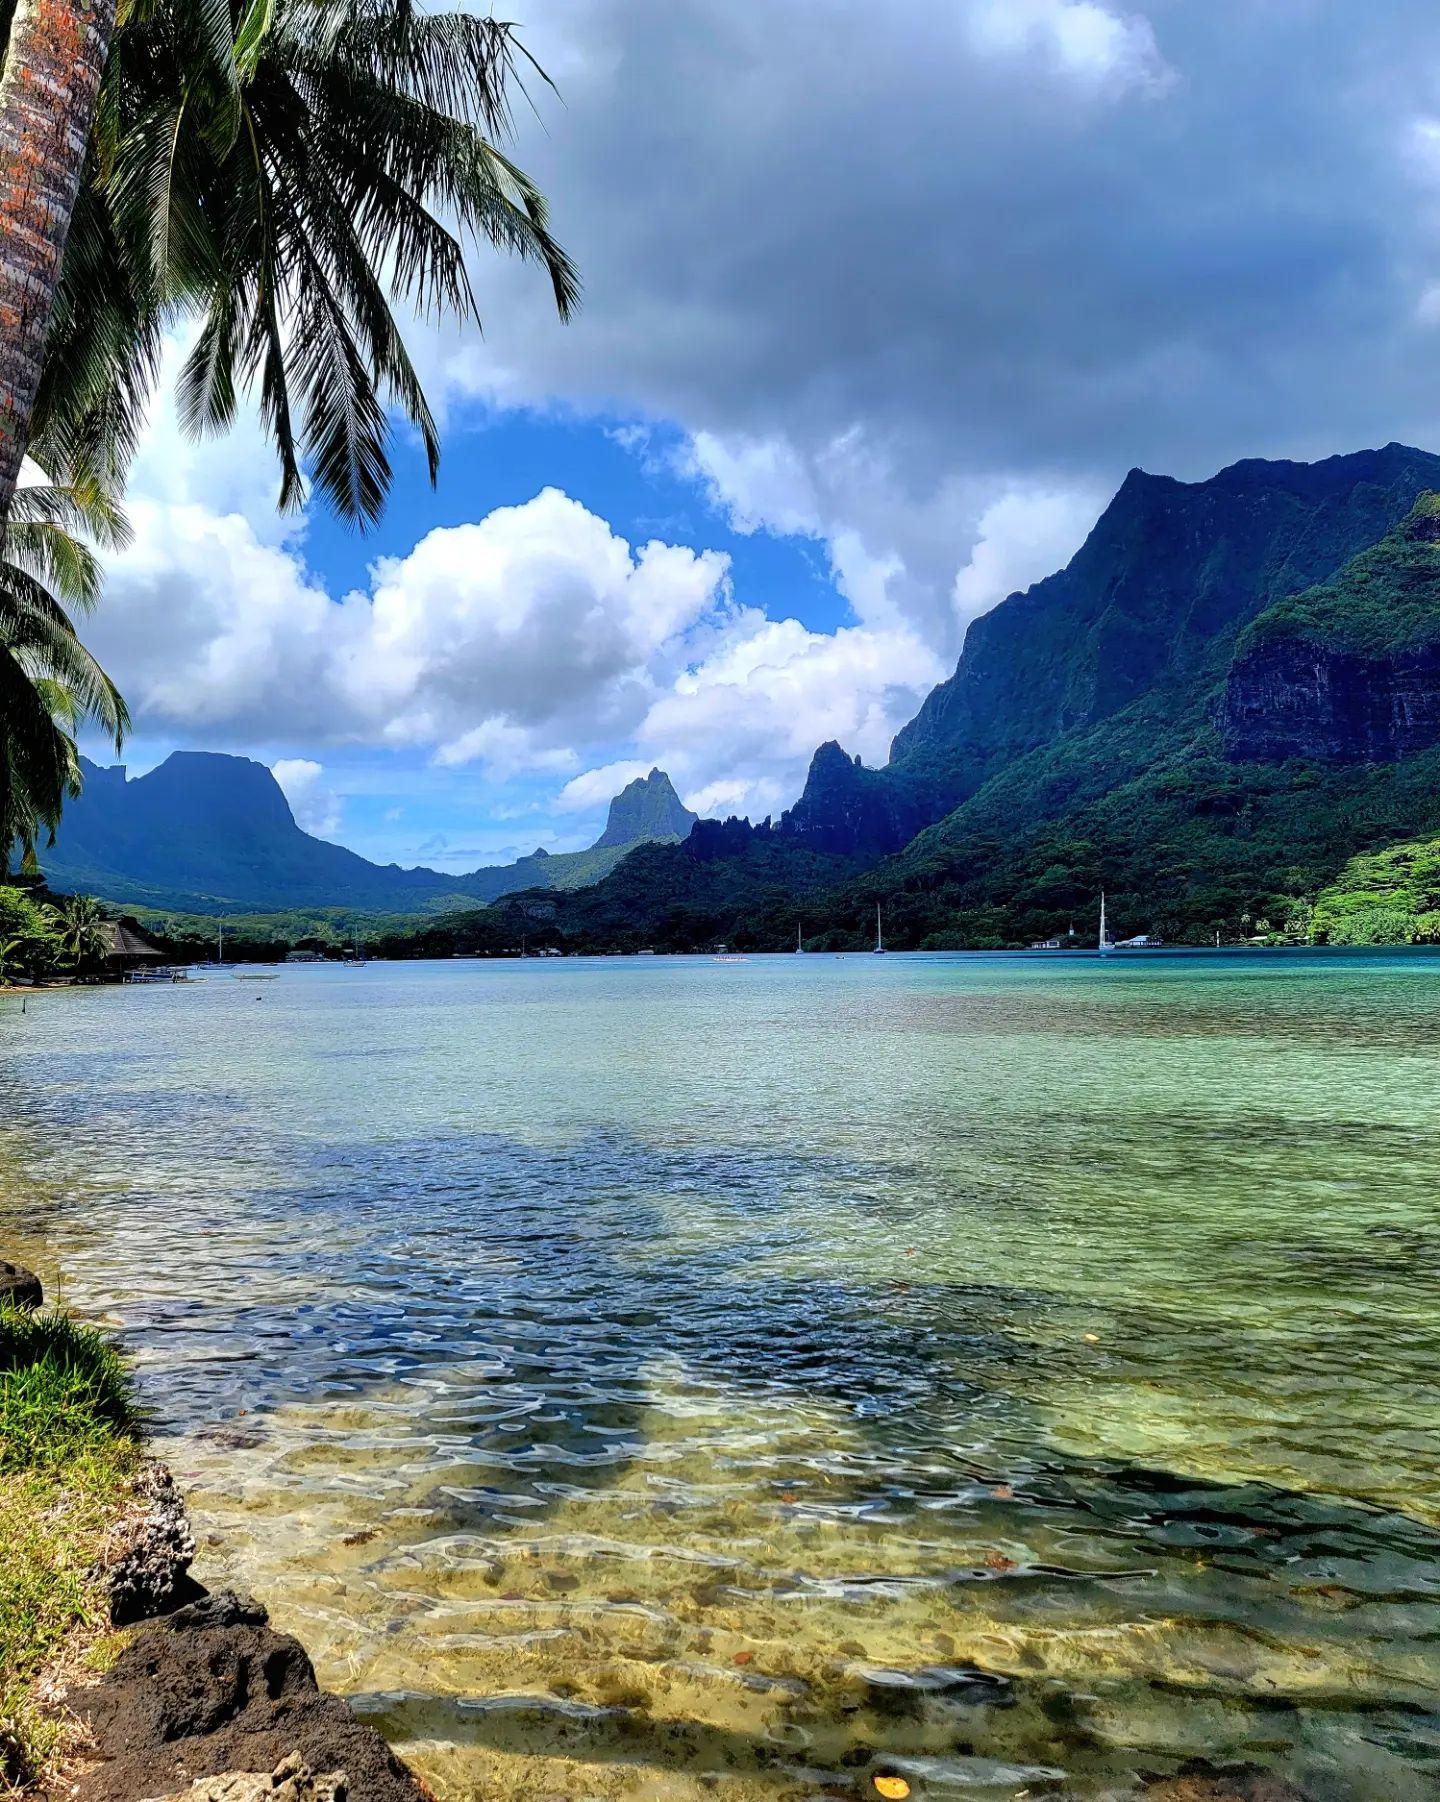 Dana Hamm shared vacation photos from her trip to French Polynesia, Bora Bora, Tahiti, Moorea